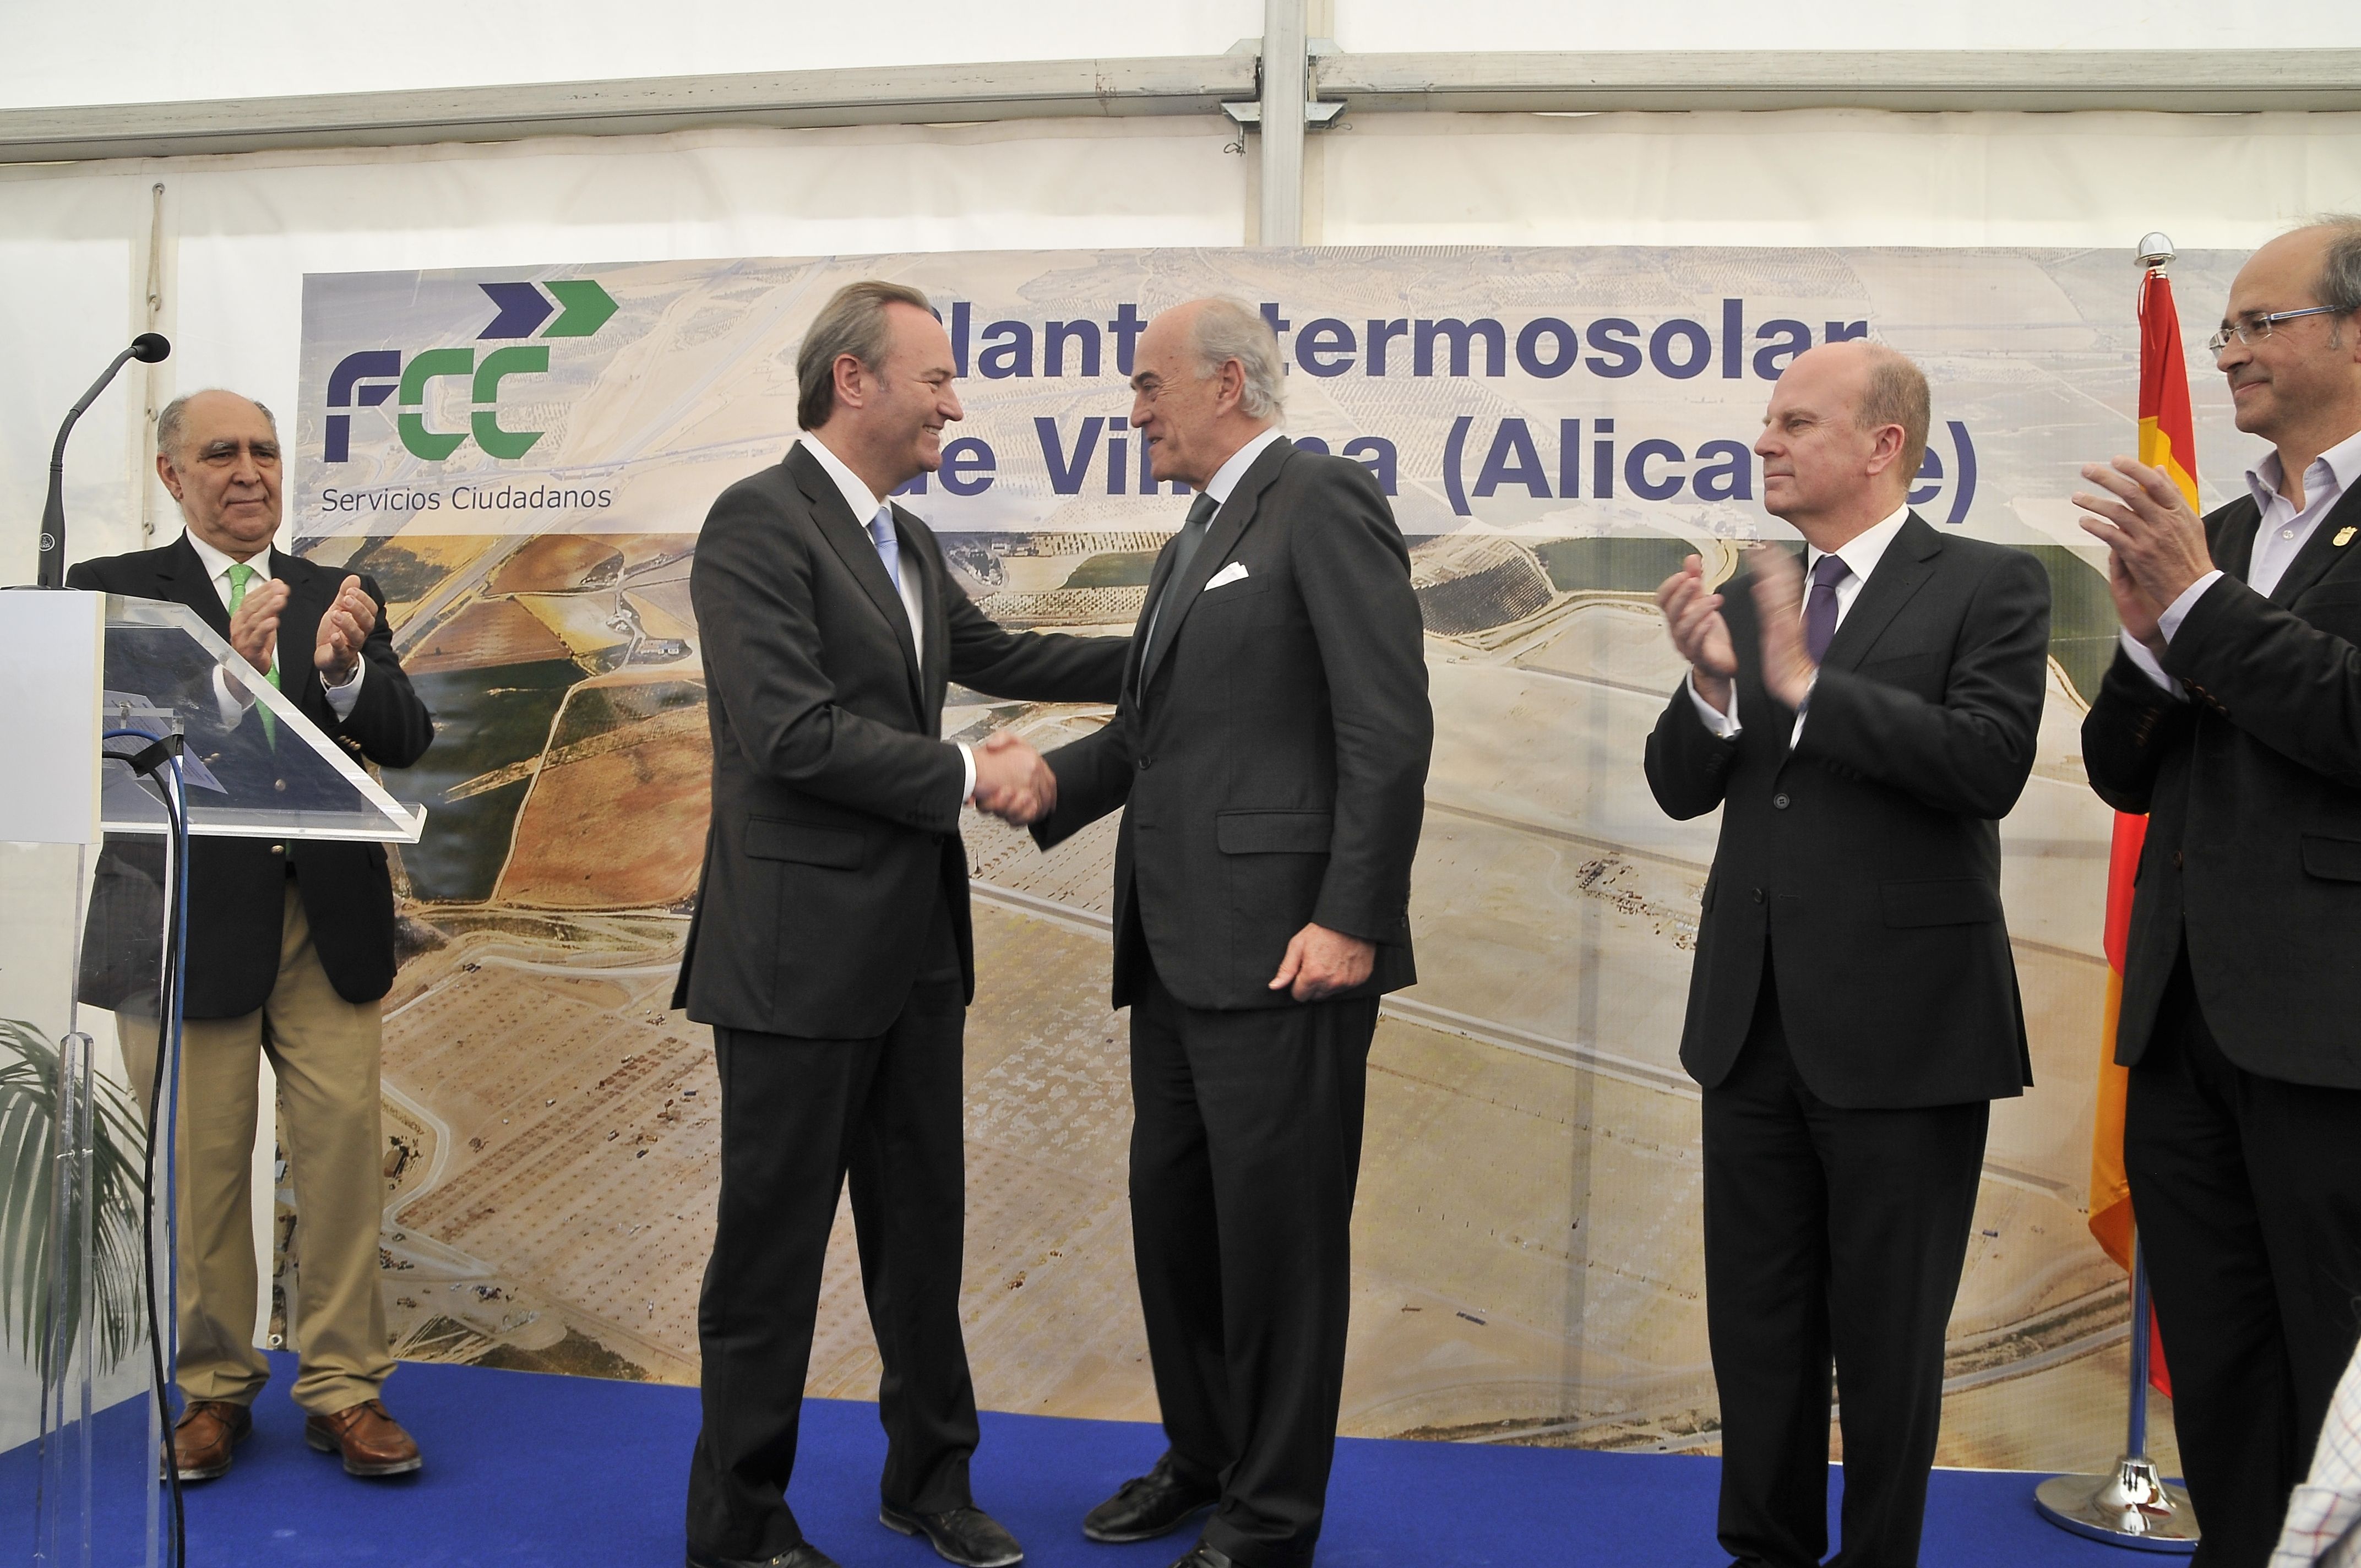 FCC inicia la construcción de su planta termosolar de Villena (Alicante), que dará empleo a más de 750 personas